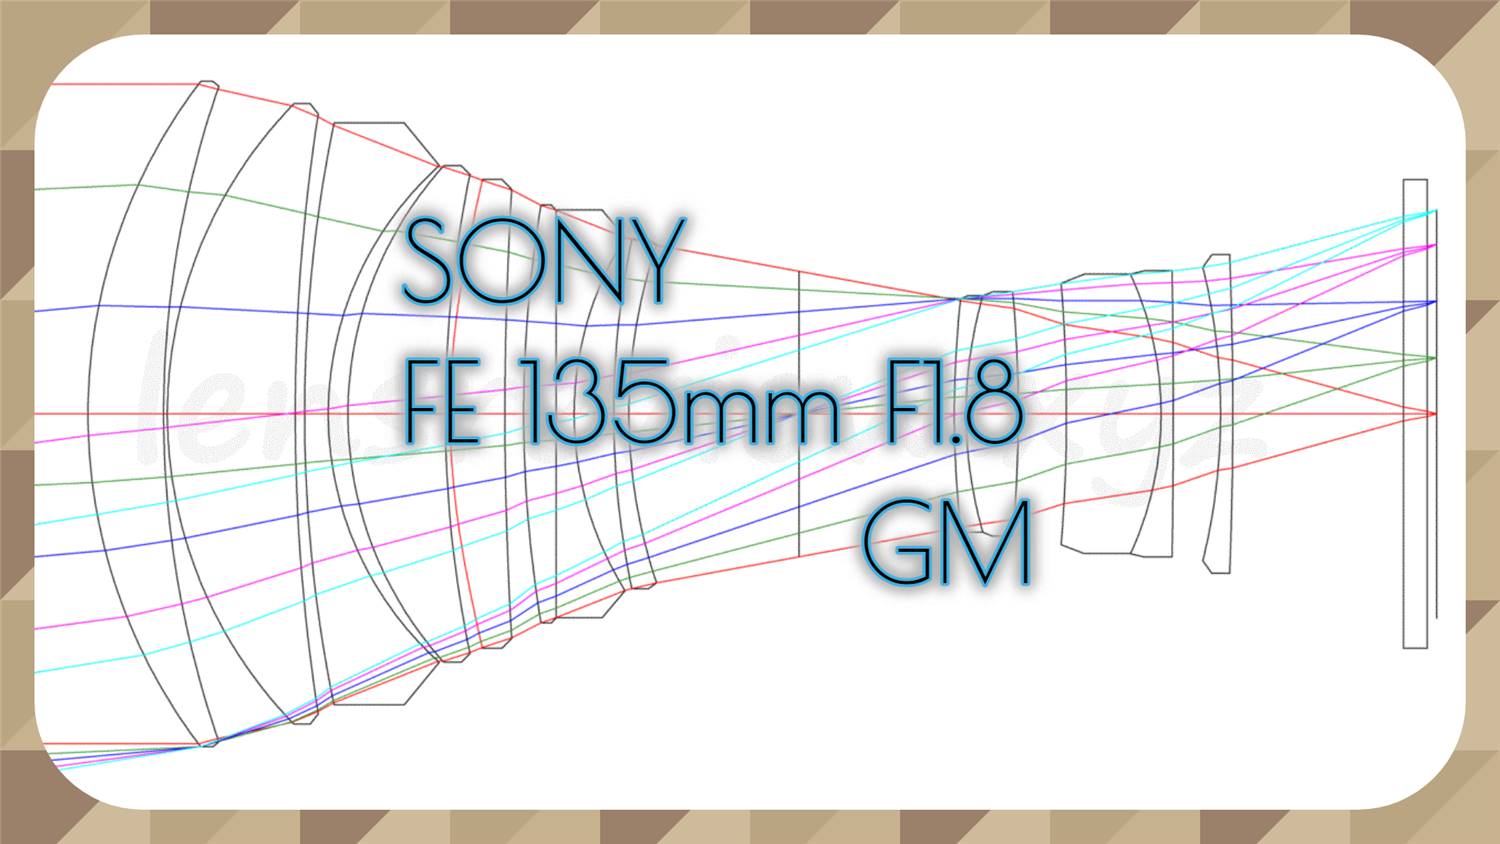 レンズのプロが解説】ソニー大口径中望遠レンズ SONY FE 135mm F1.8 GM 